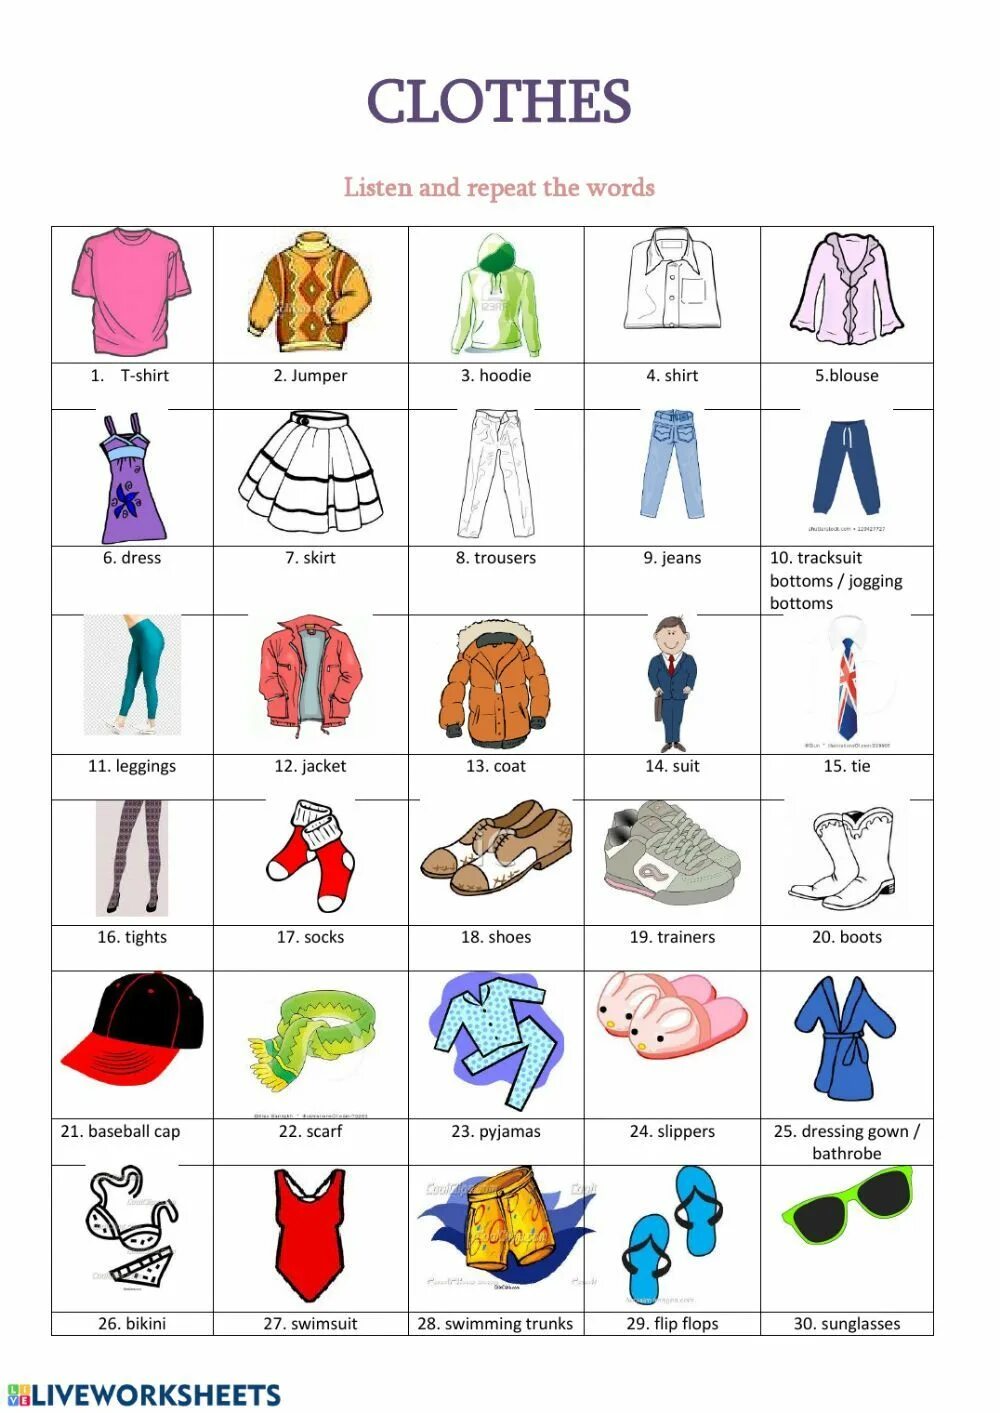 Одежда на английском. Vocabulary одежда. Разная одежда на английском. Одежда на английском для детей. Одежда на английском языке для детей